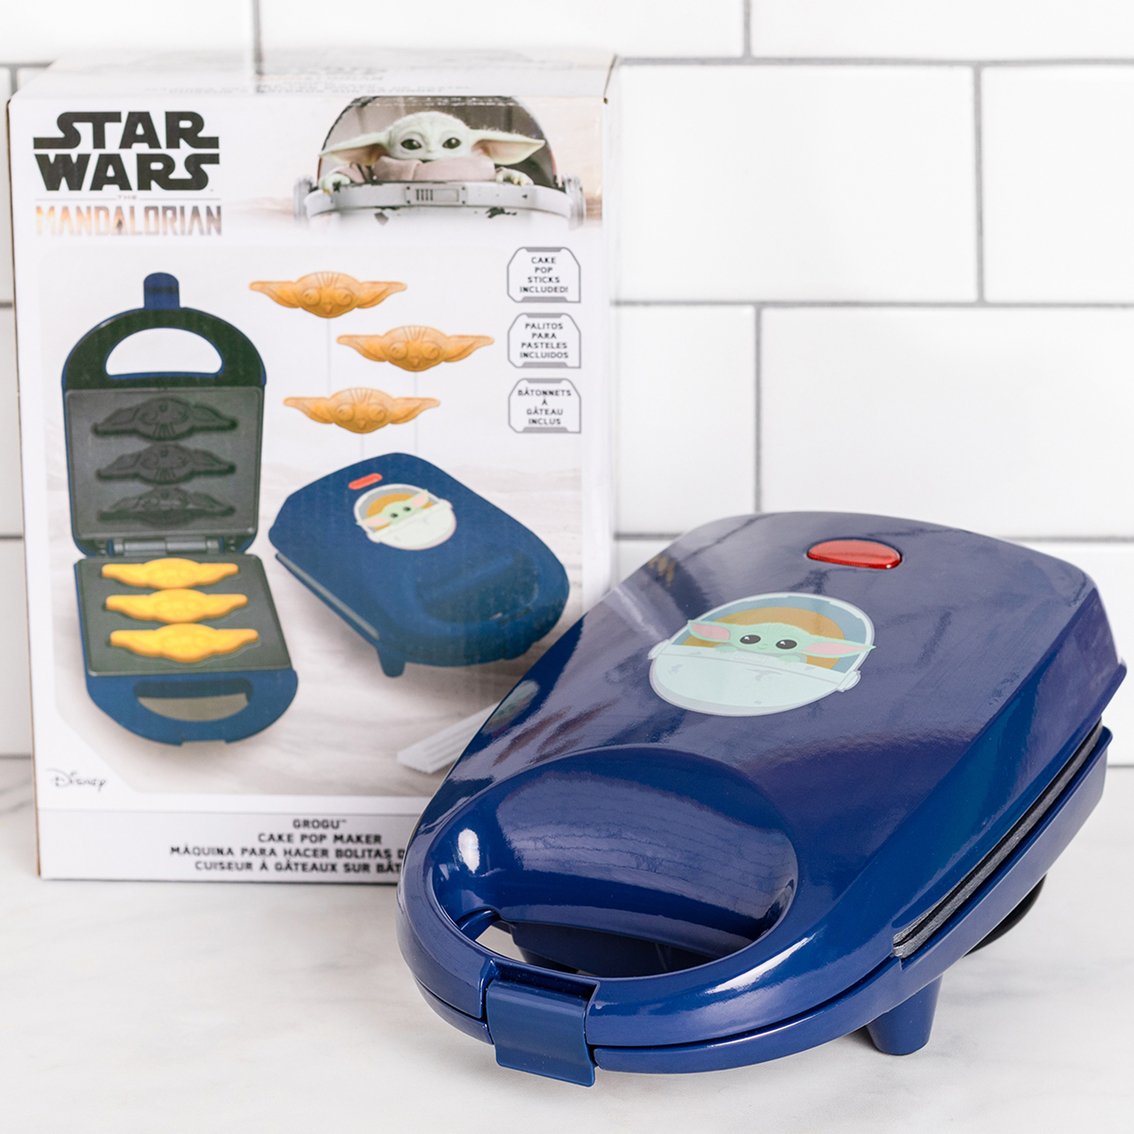 Star Wars Mandalorian Grogu Cake Pop Maker - Image 5 of 6